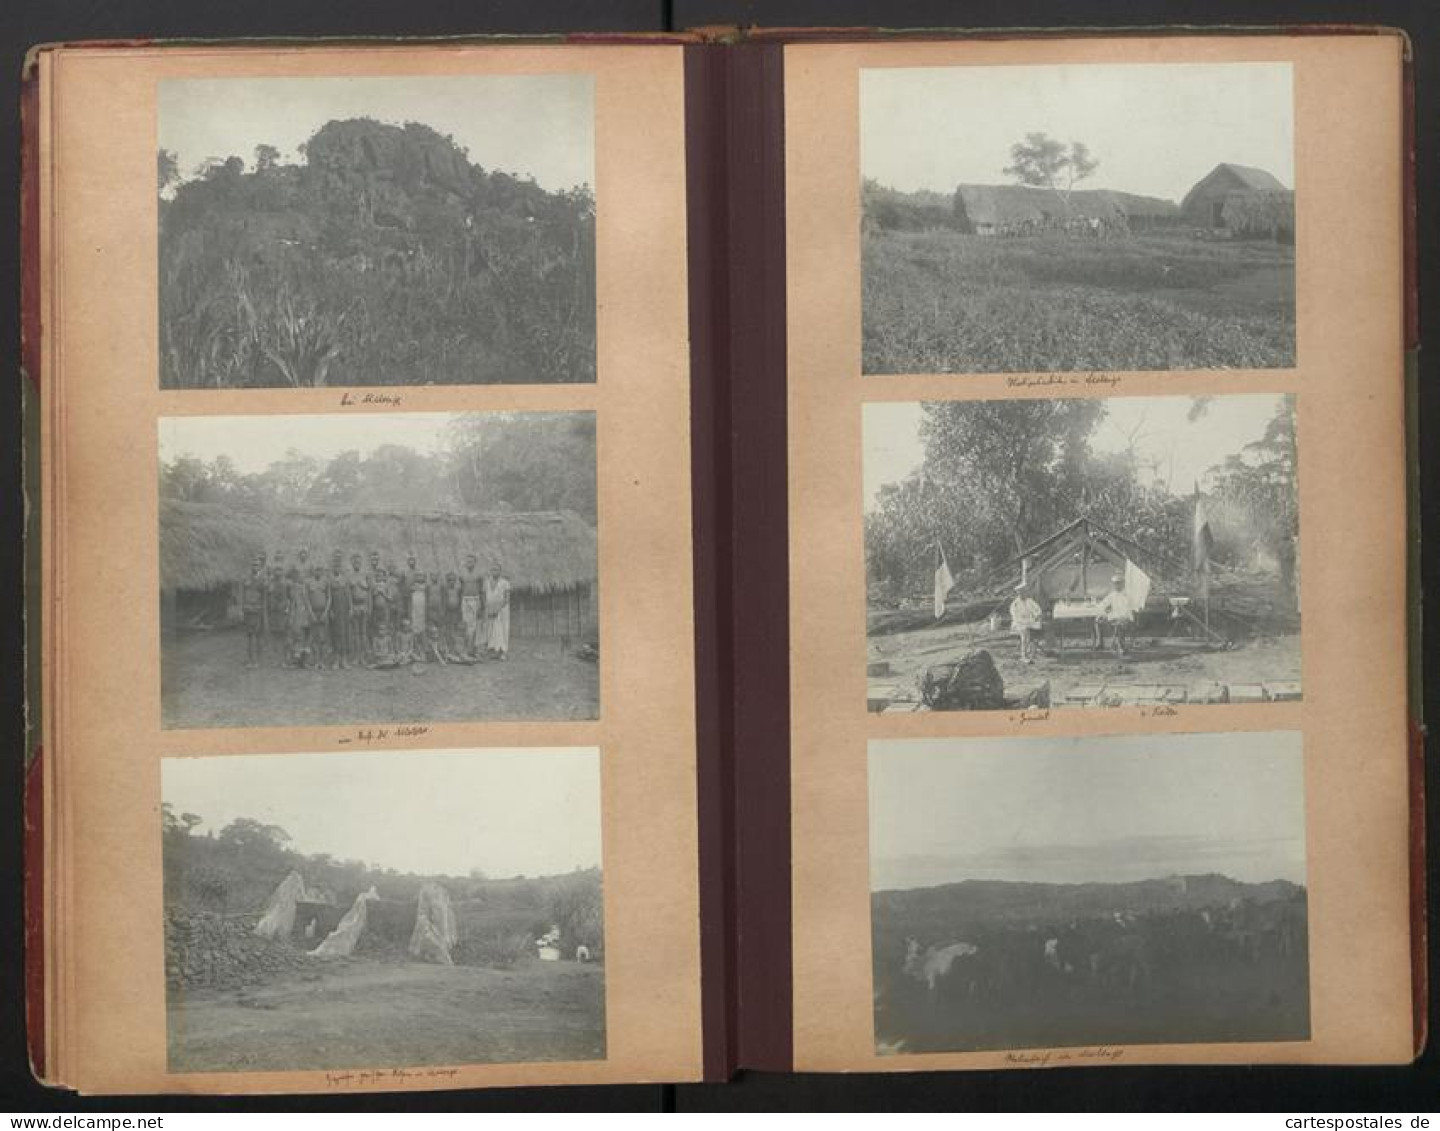 Fotoalbum mit 280 Fotografien, DSWA Schutztruppe, Afrika, Oblt. von Grawert, Hauptmann von Fiedler, Zanzibar, Durban 